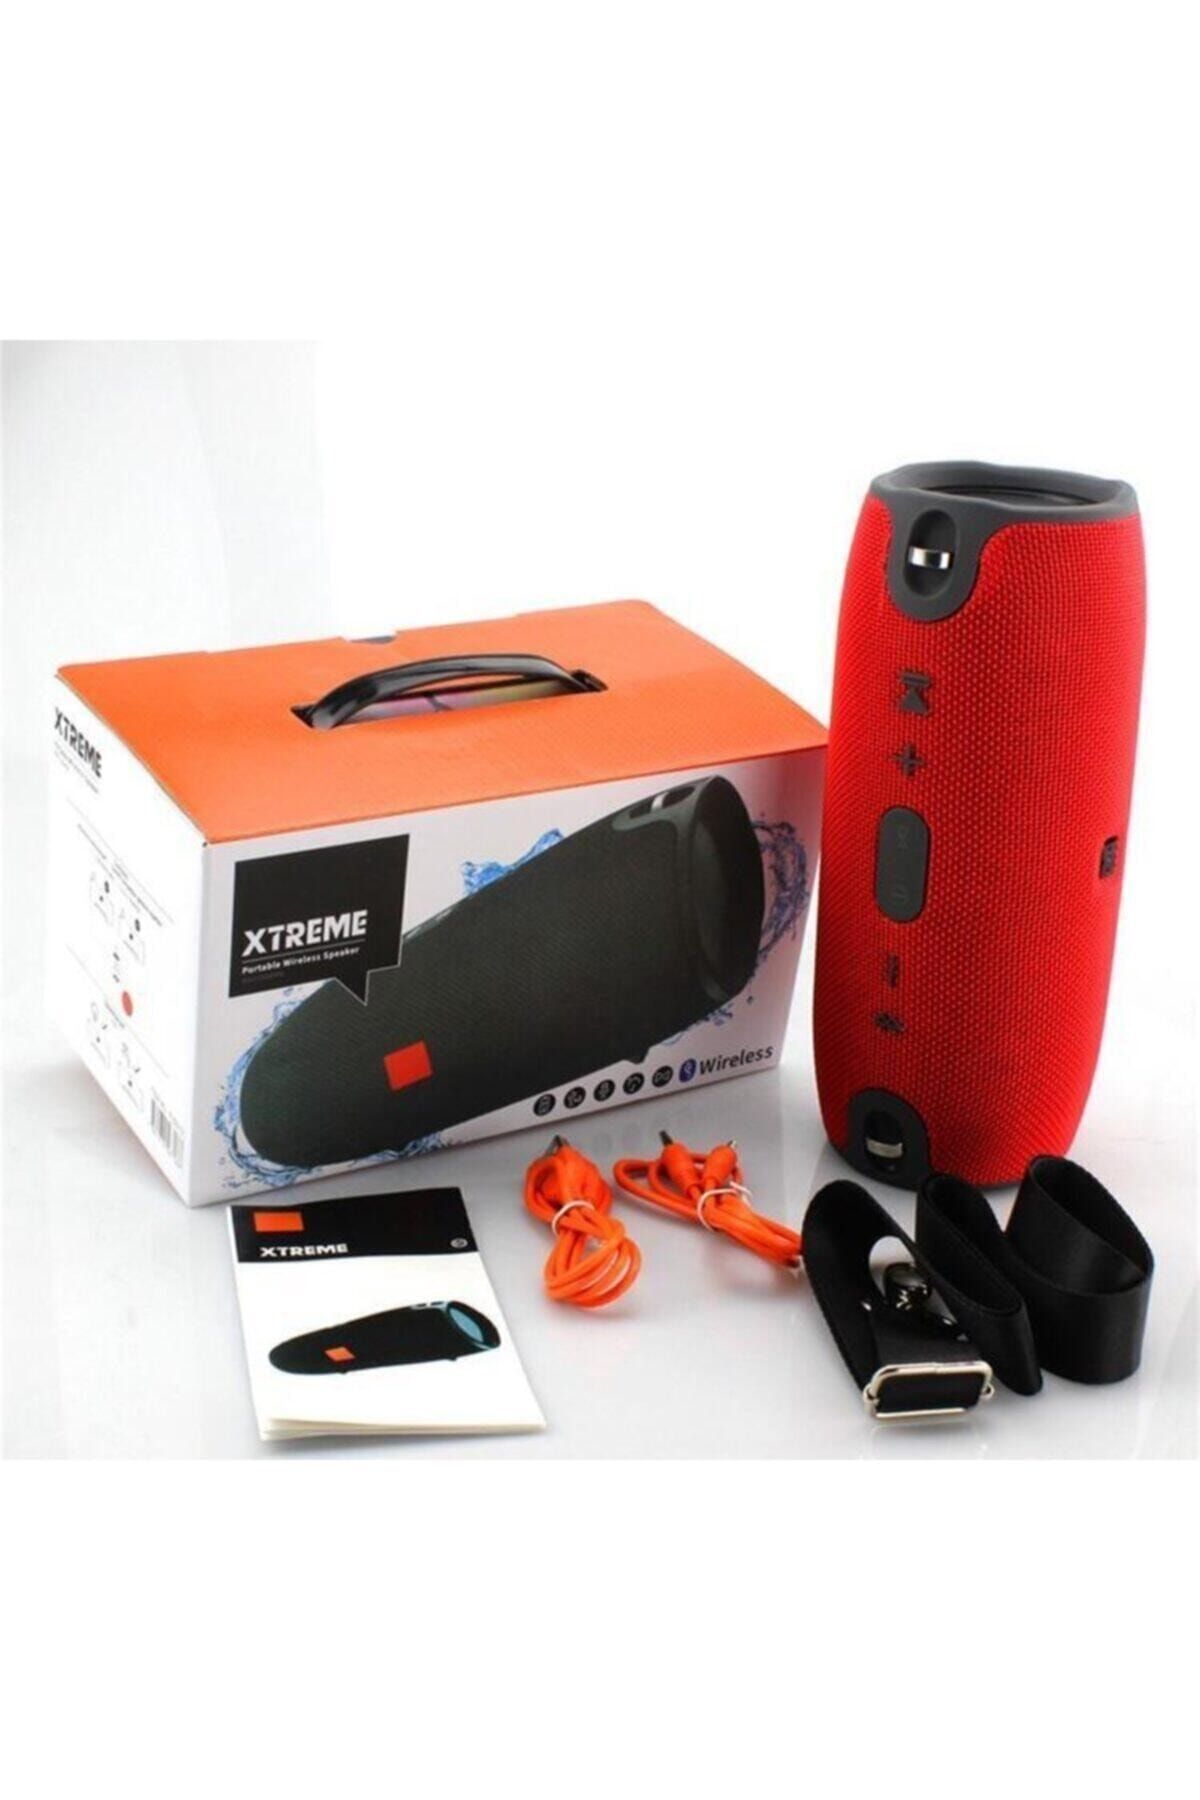 TRENDİST Xtreme Askılı Bluetooth Hoparlör Ses Bombası Xtreme Mt2 - Kırmızı